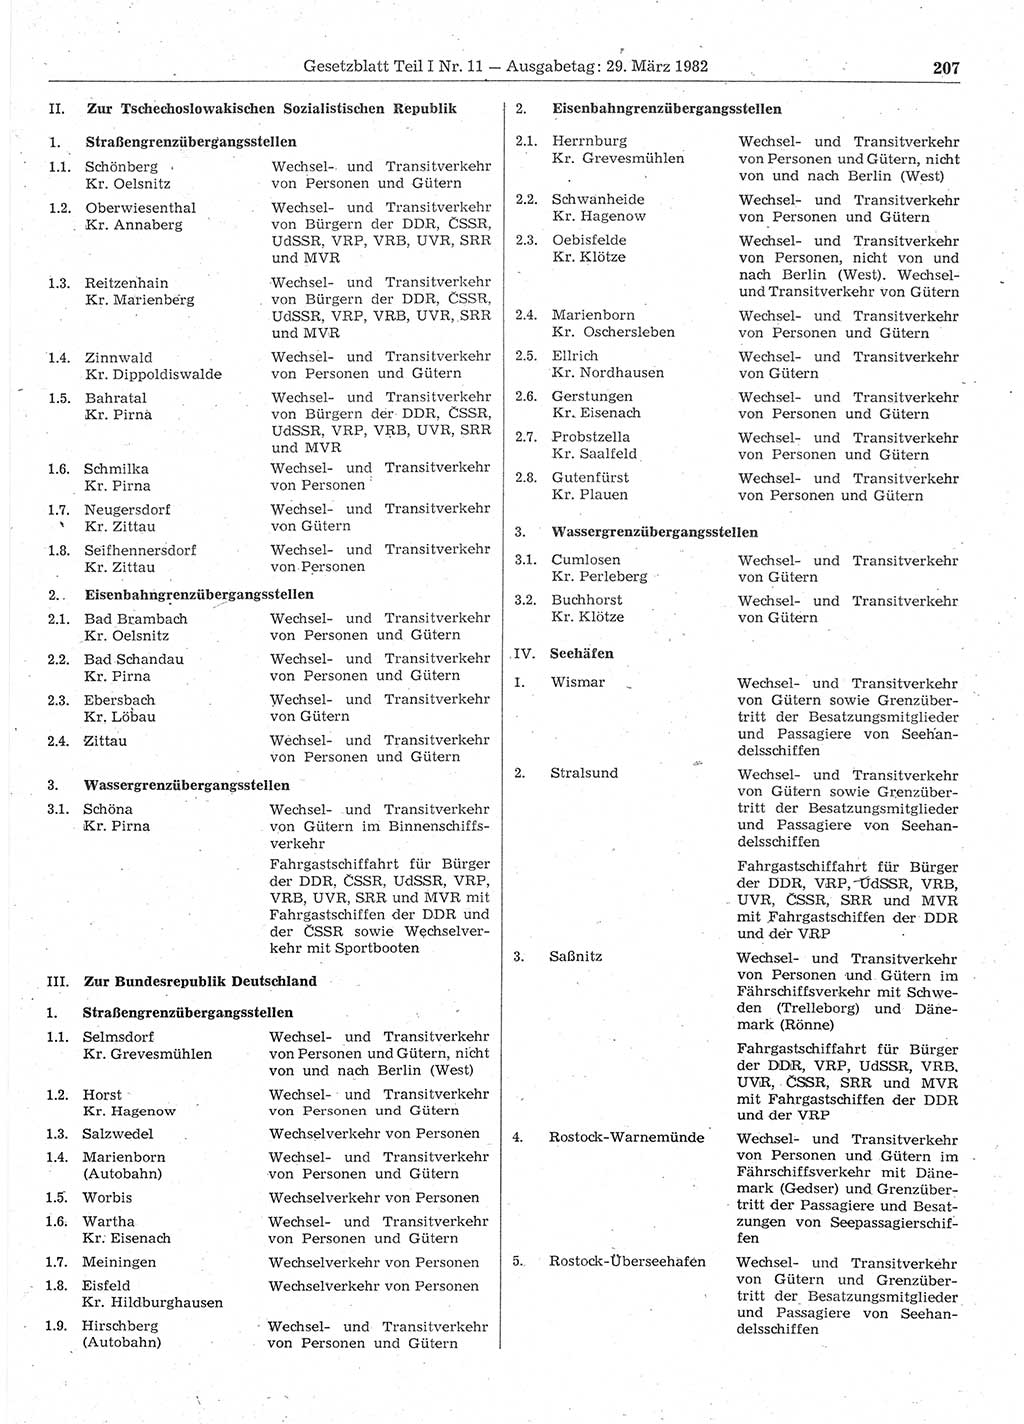 Gesetzblatt (GBl.) der Deutschen Demokratischen Republik (DDR) Teil Ⅰ 1982, Seite 207 (GBl. DDR Ⅰ 1982, S. 207)